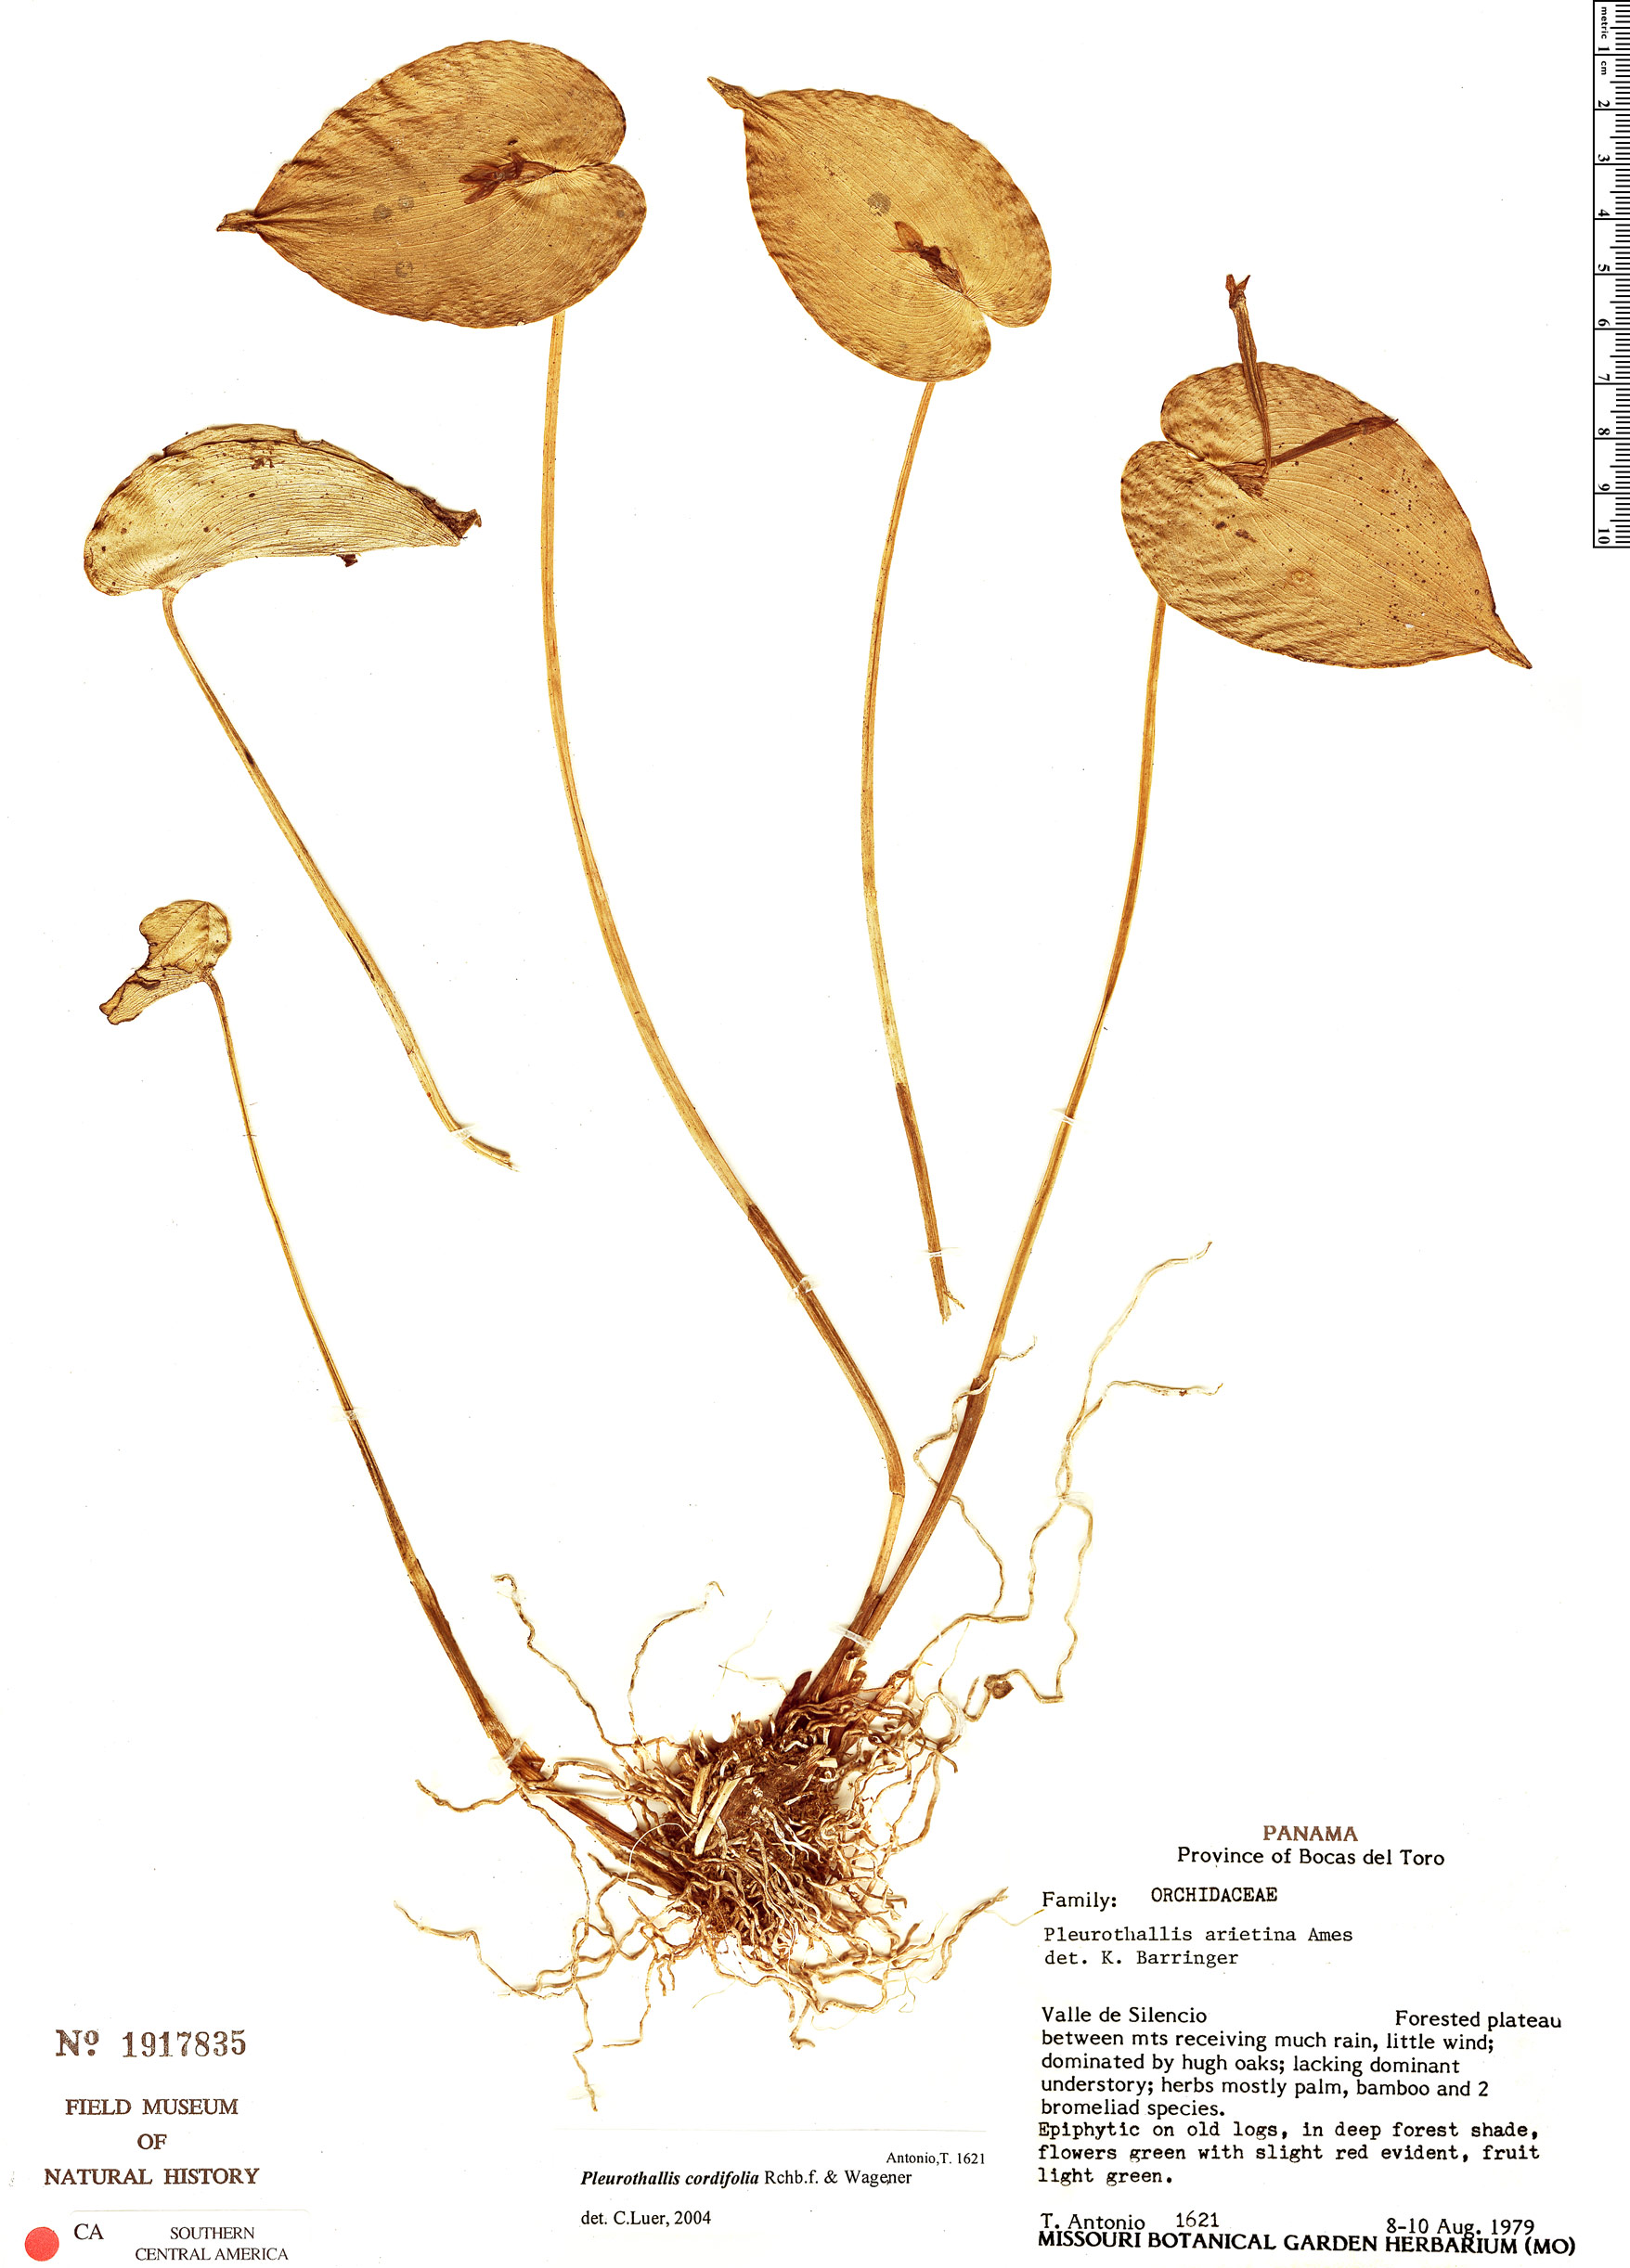 Pleurothallis cordifolia image